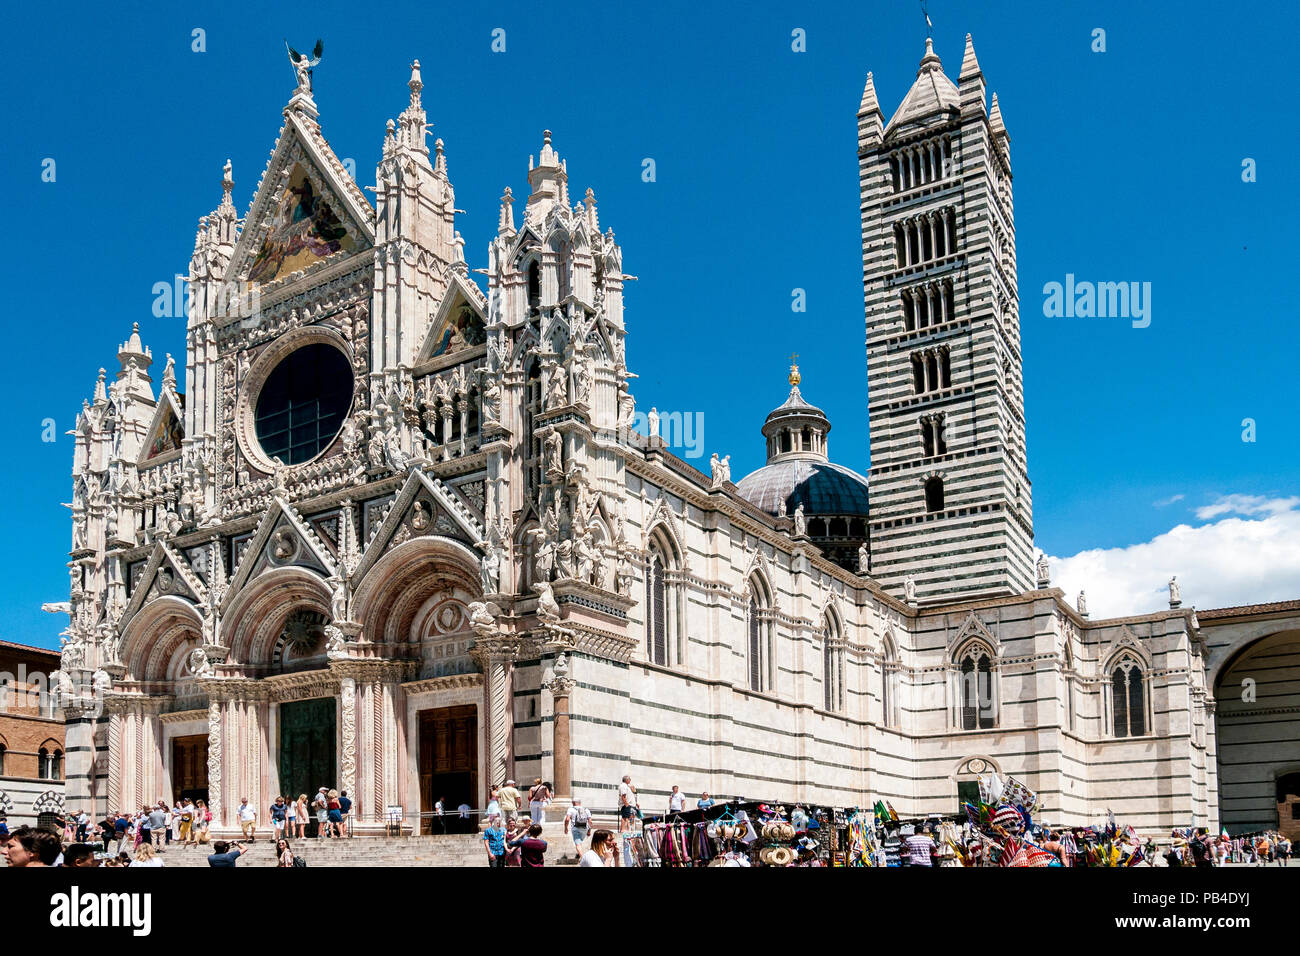 Die Menschen Die gotische Kathedrale Santa Maria Assunta, in der mittelalterlichen Stadt, Siena, Toskana, Italien Stockfoto